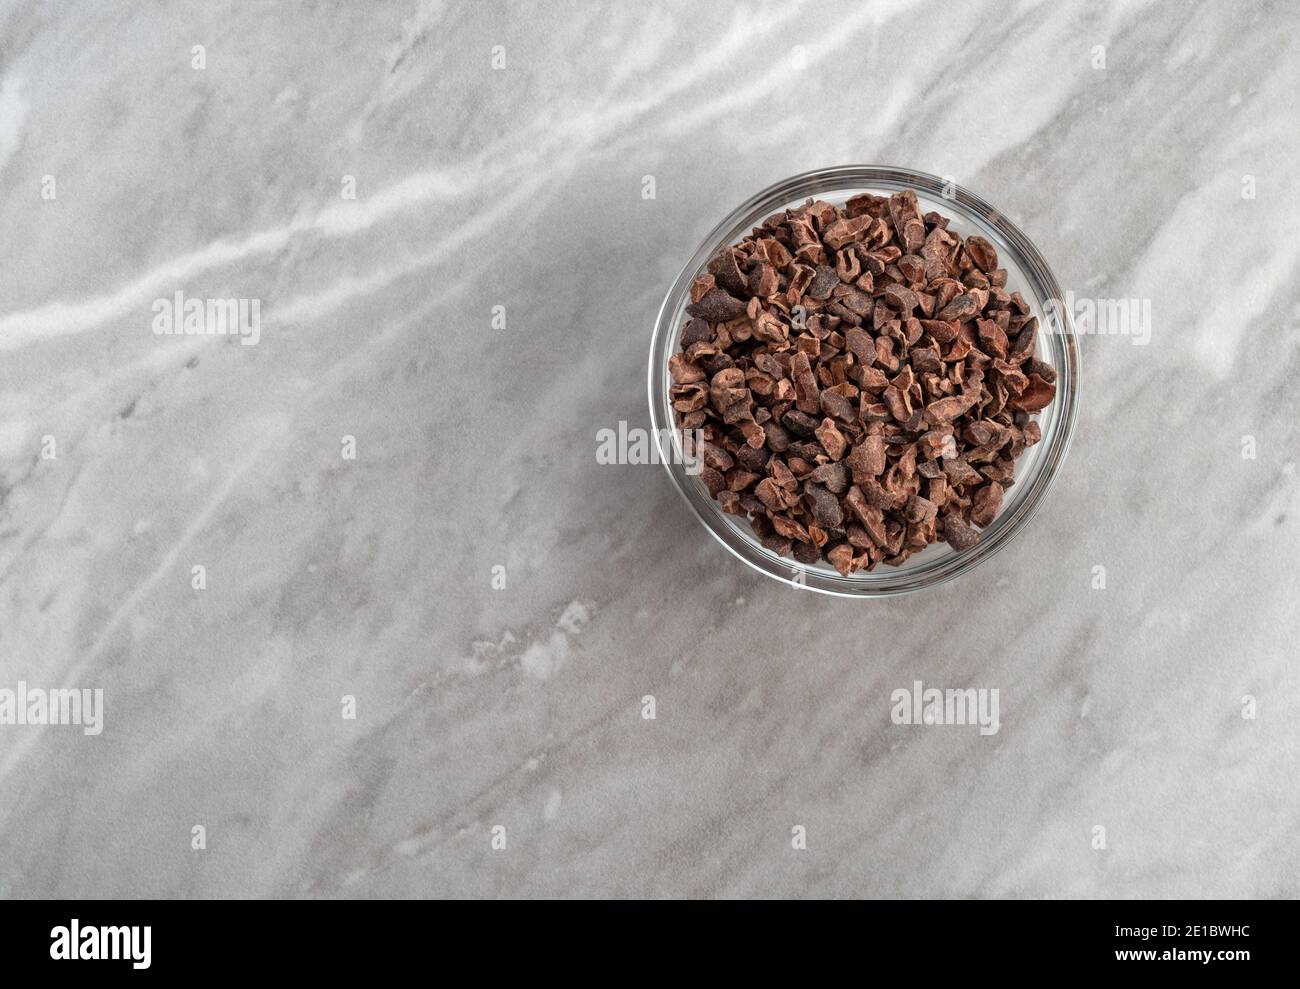 Vue de dessus d'un bol en verre rempli de nibes de cacao sur un comptoir en marbre gris éclairé par un éclairage naturel. Banque D'Images